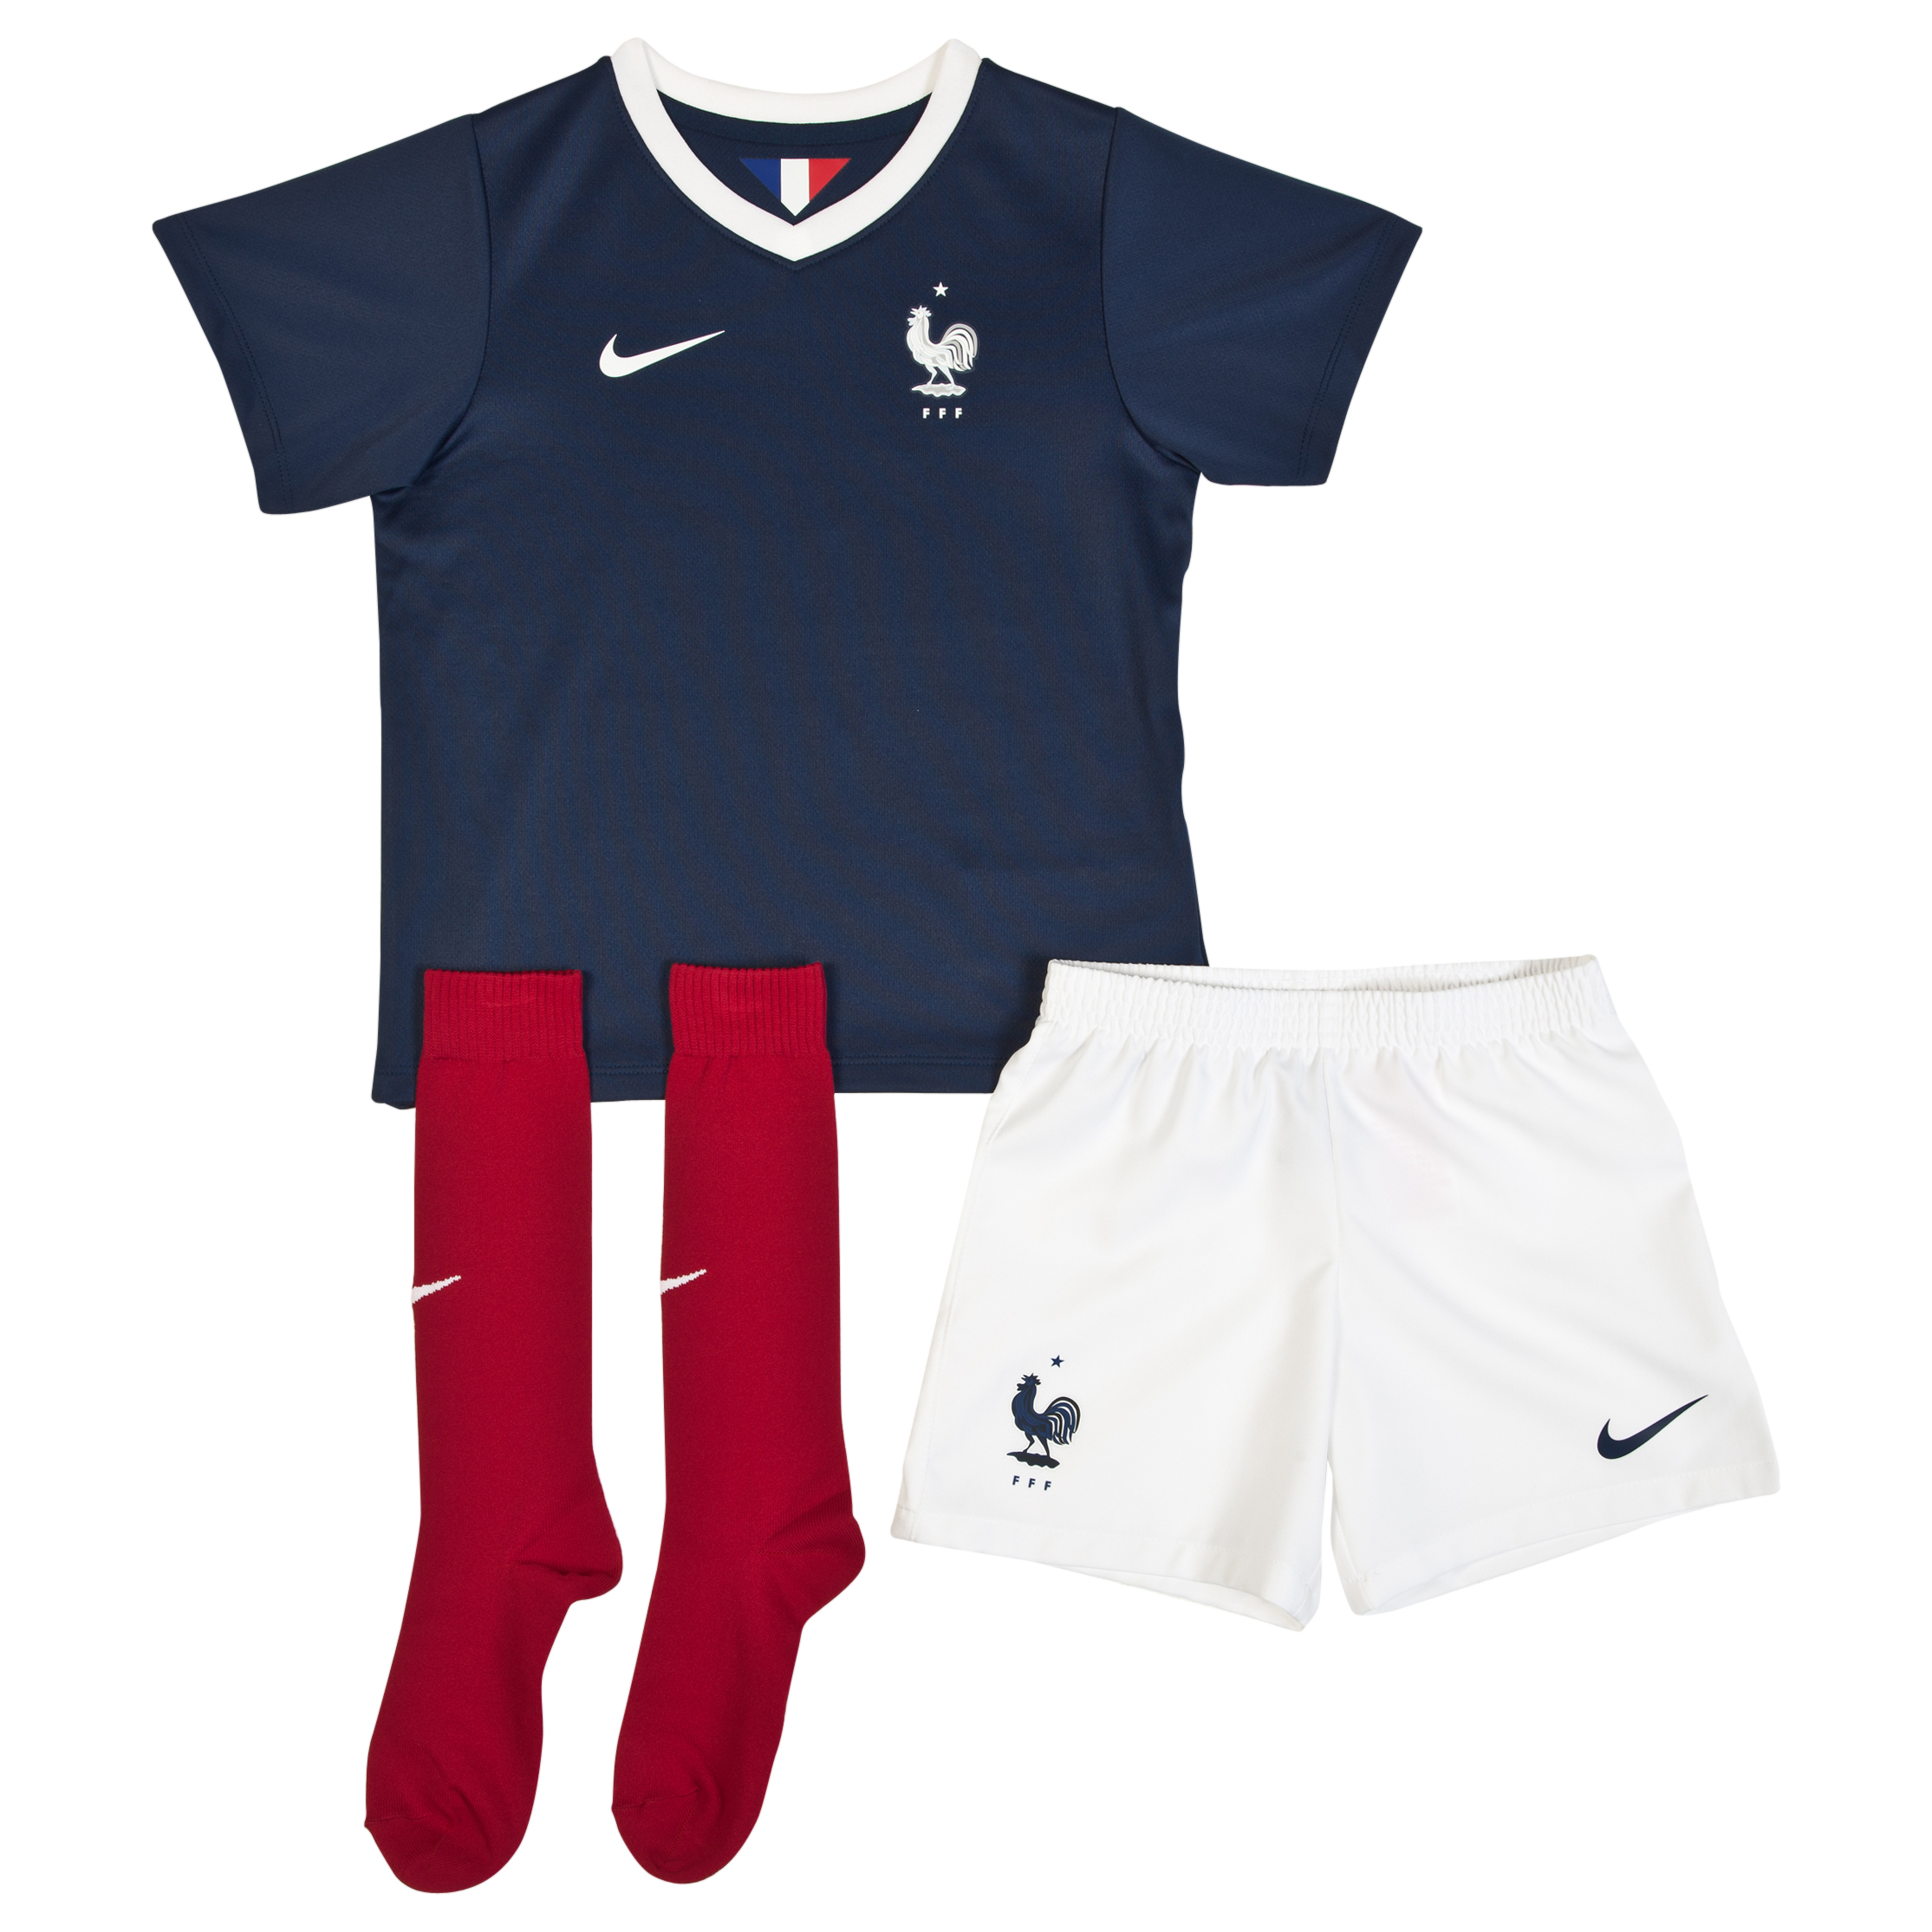 France Home Kit 2013/15 - Little Boys Navy